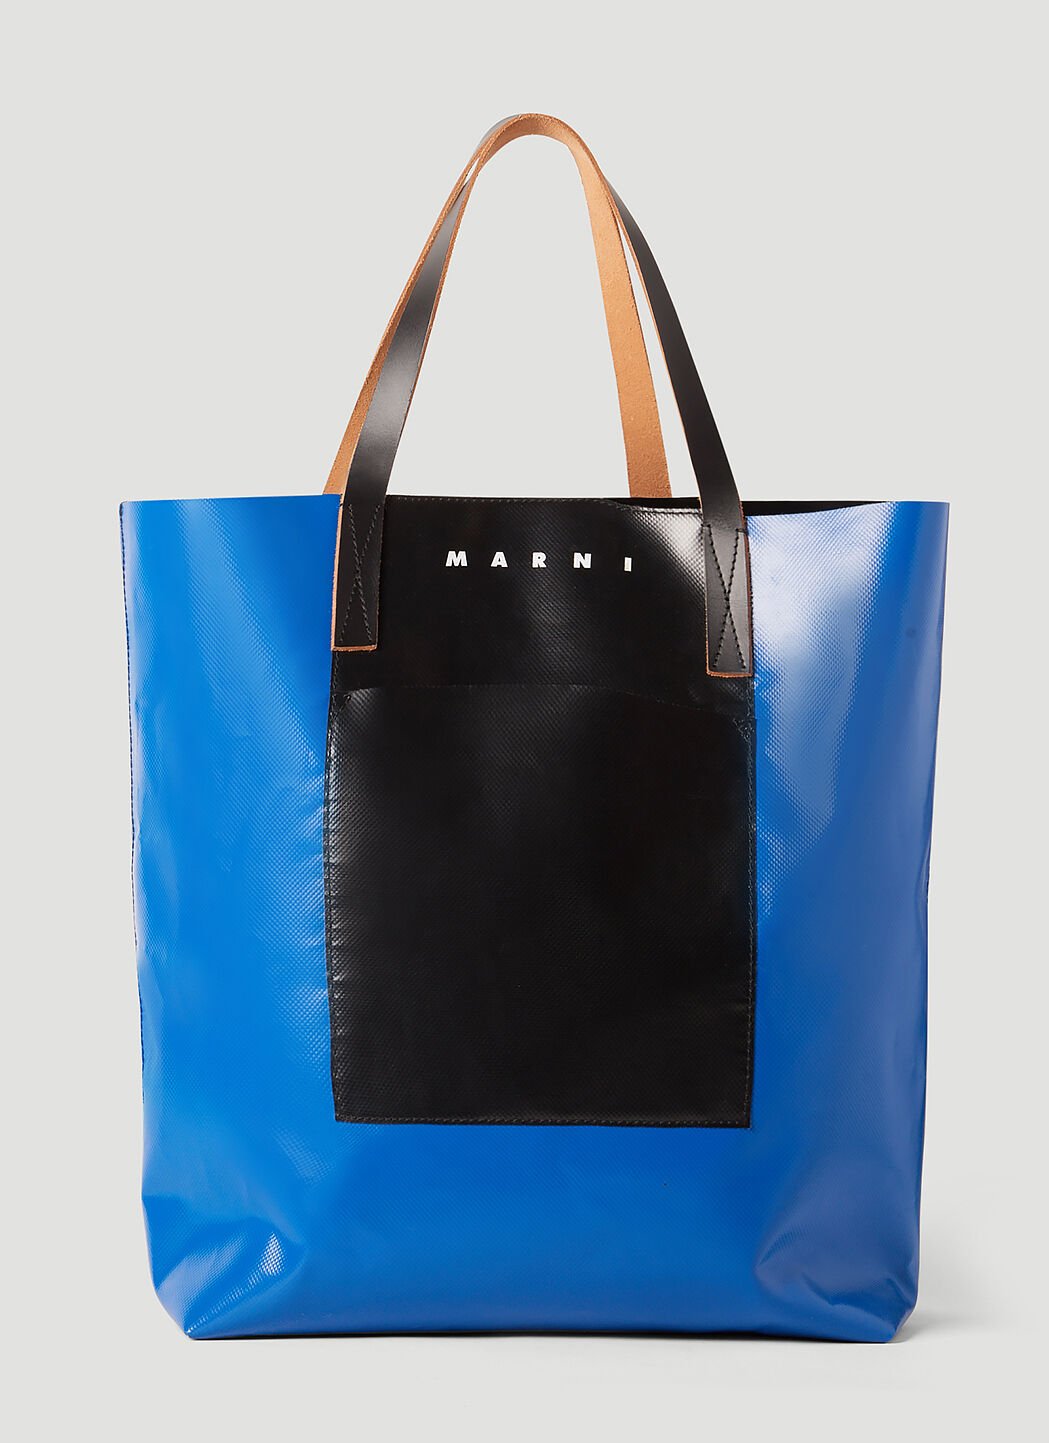 Burberry Tribeca Shopping Tote Bag Blue bur0154036